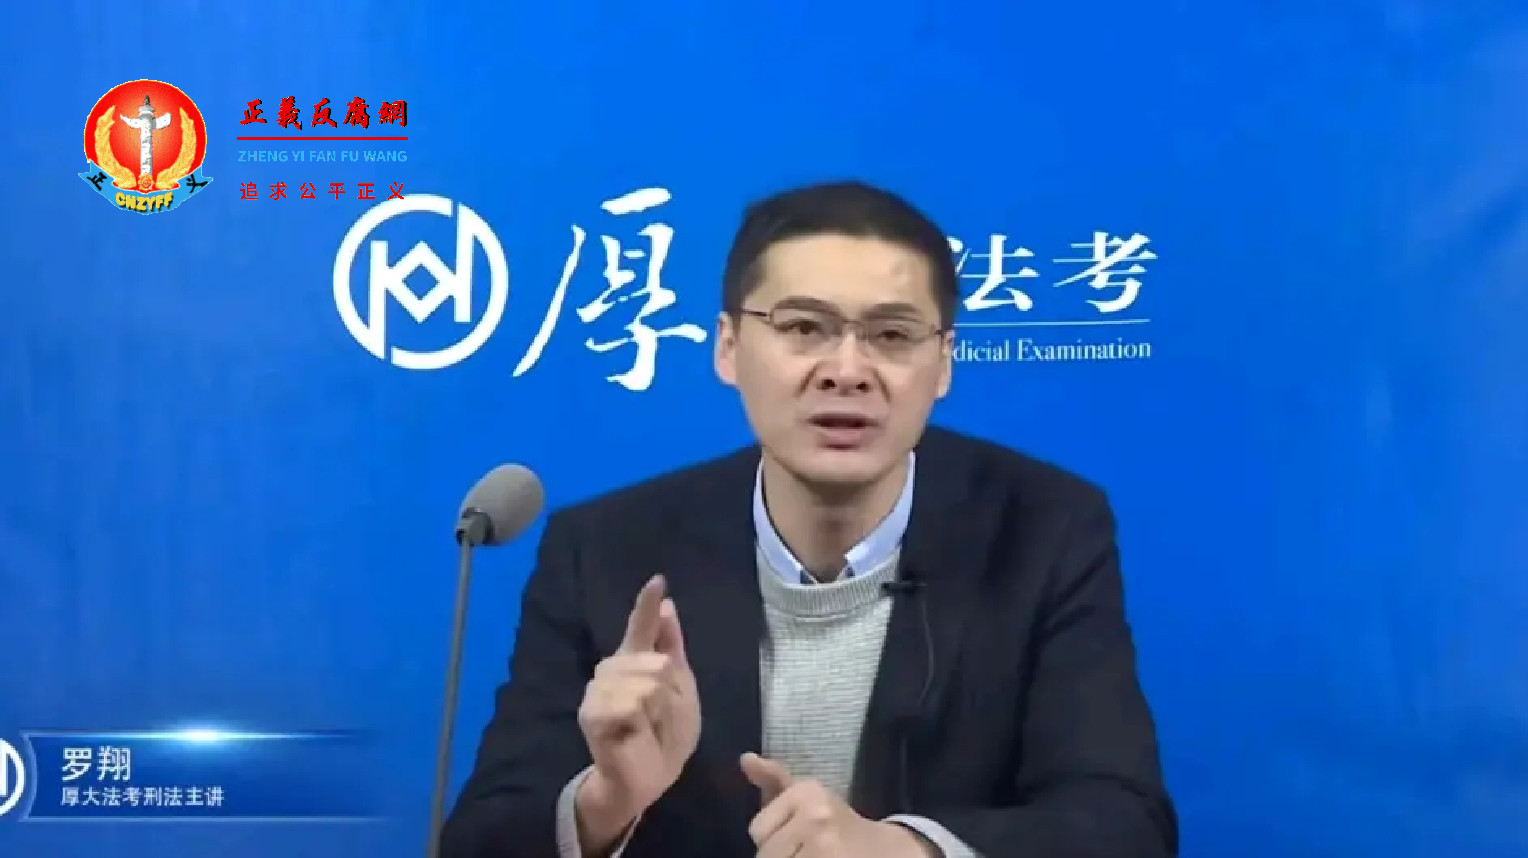 微视新闻｜中国法学专家罗翔微博突被清空，曾遭“五毛党”及网军攻击